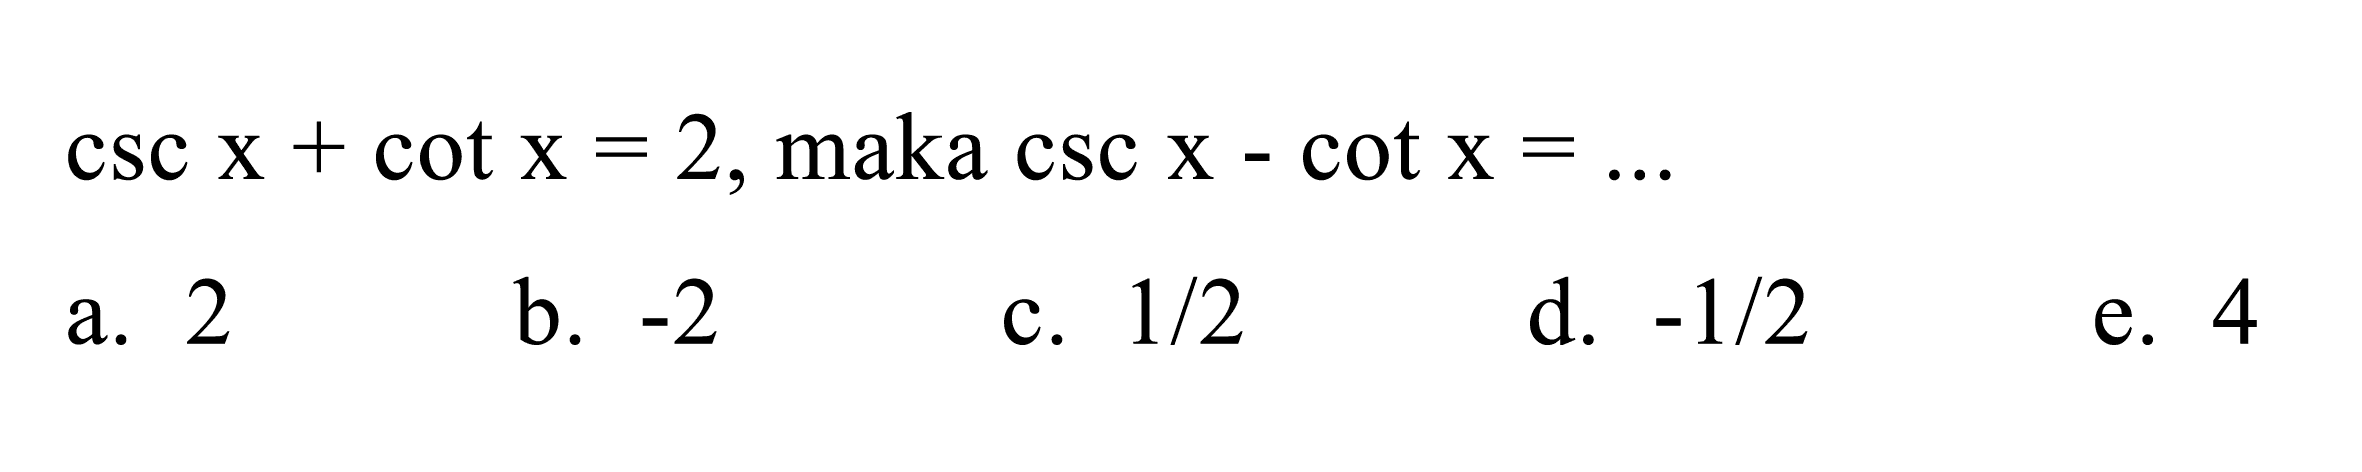  csc x+cot x=2 , maka  csc x-cot x=... 
a. 2
b.  -2 
c.  1 / 2 
d.  -1 / 2 
e. 4